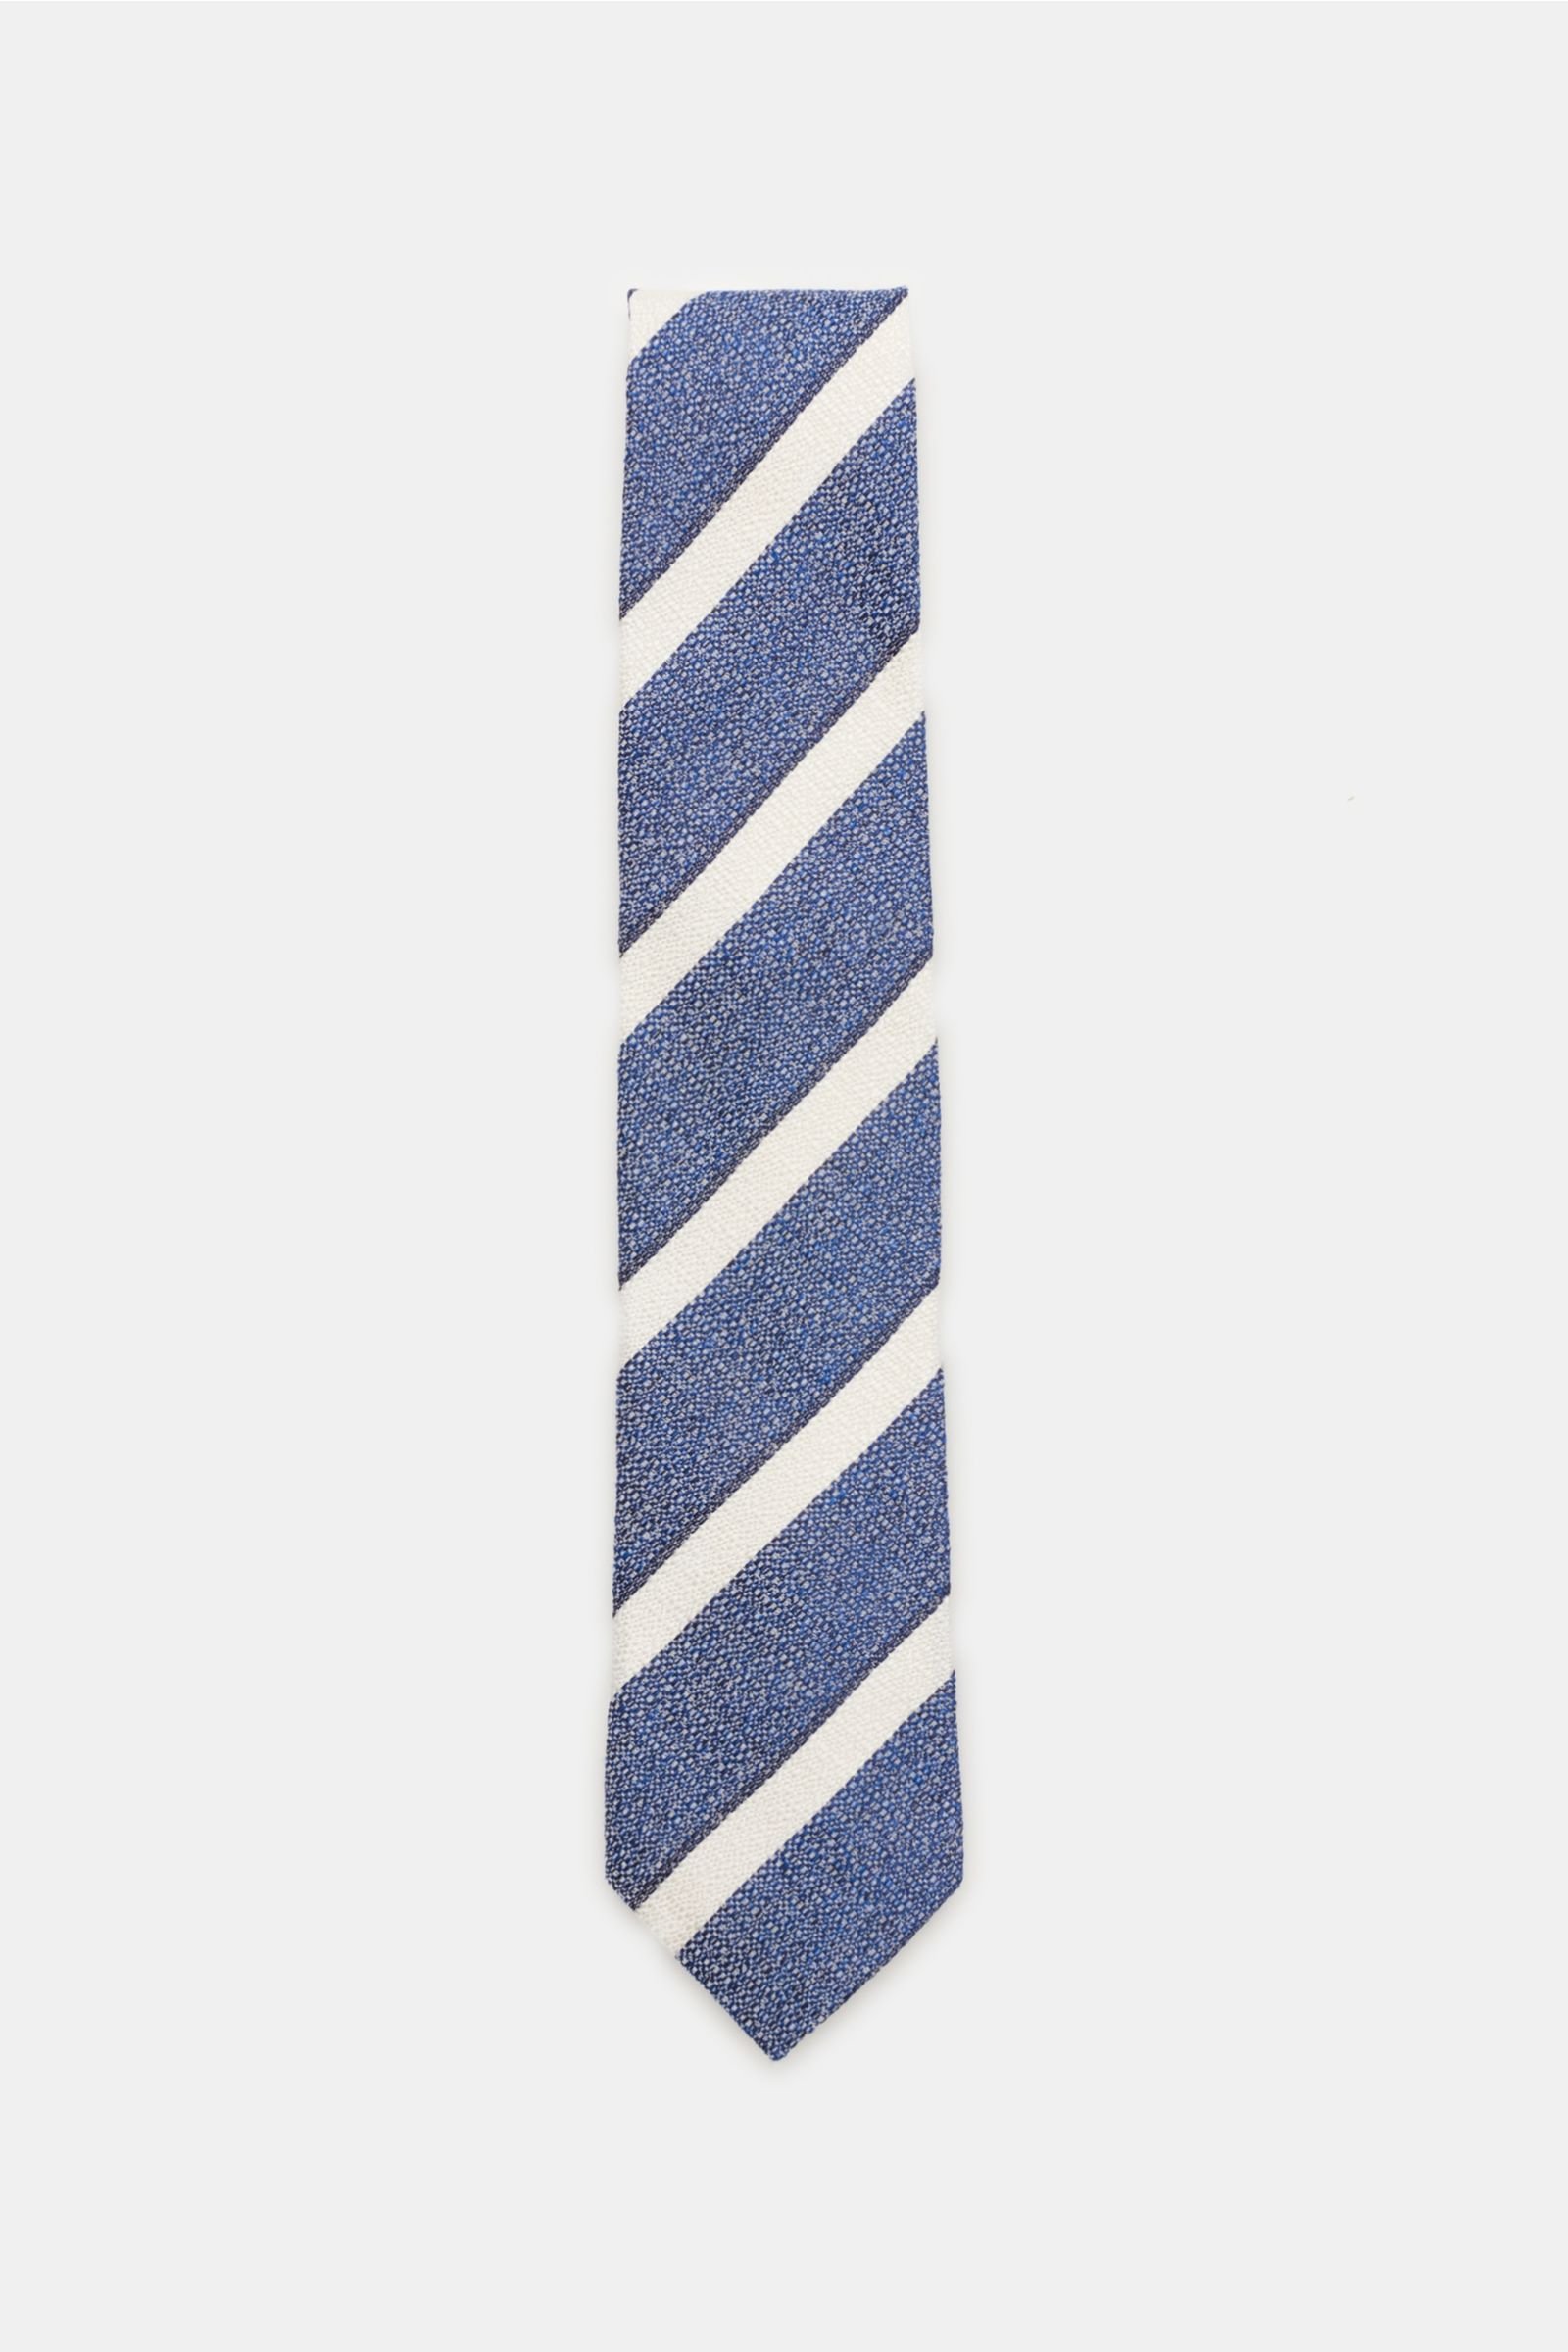 Krawatte dunkelblau/weiß gestreift